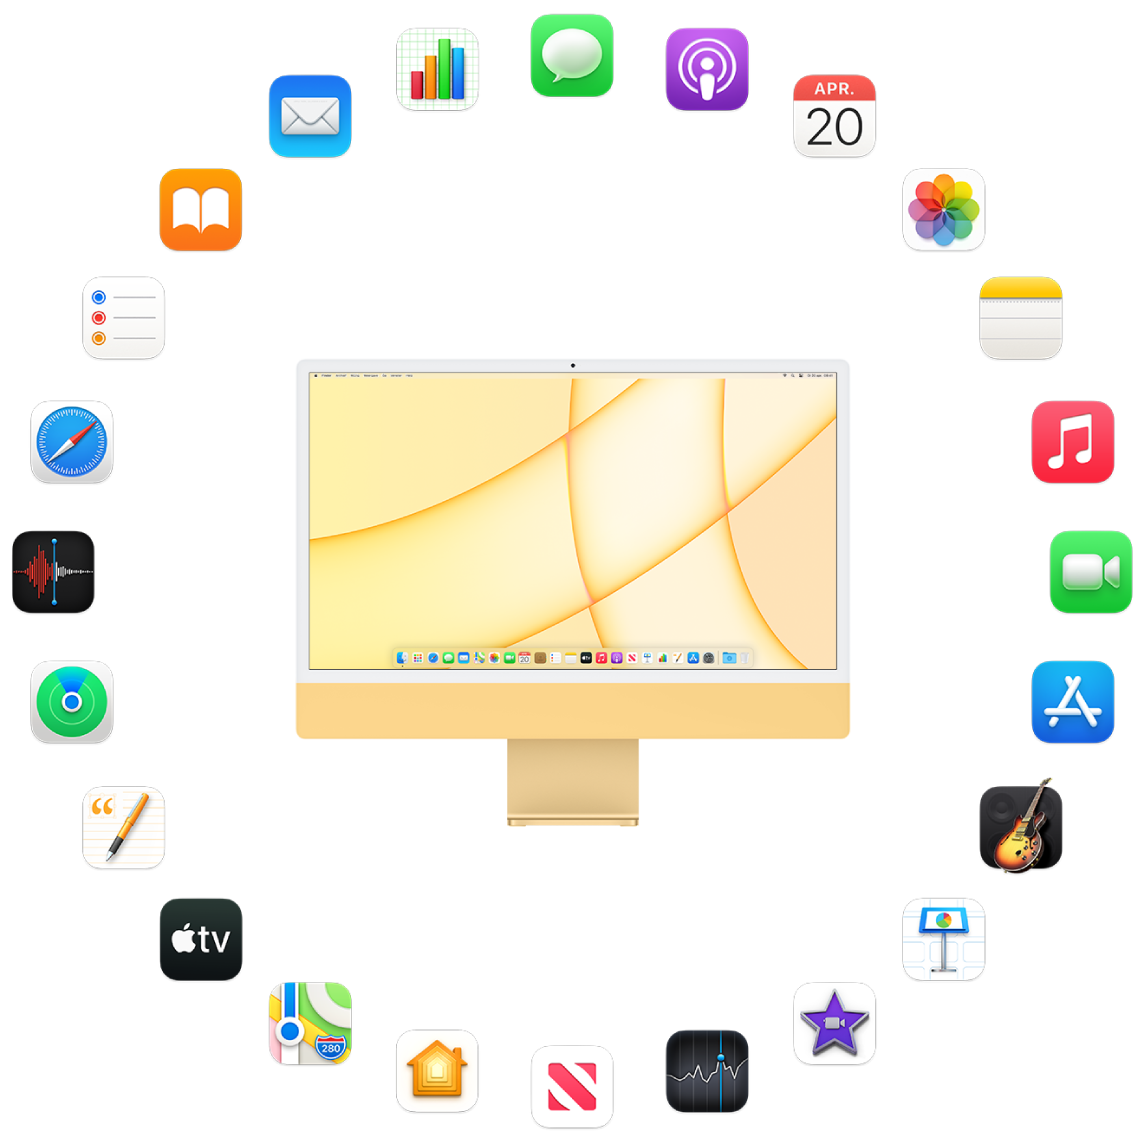 Een iMac omringd door de symbolen voor de apps die standaard worden meegeleverd en die hierna worden beschreven.